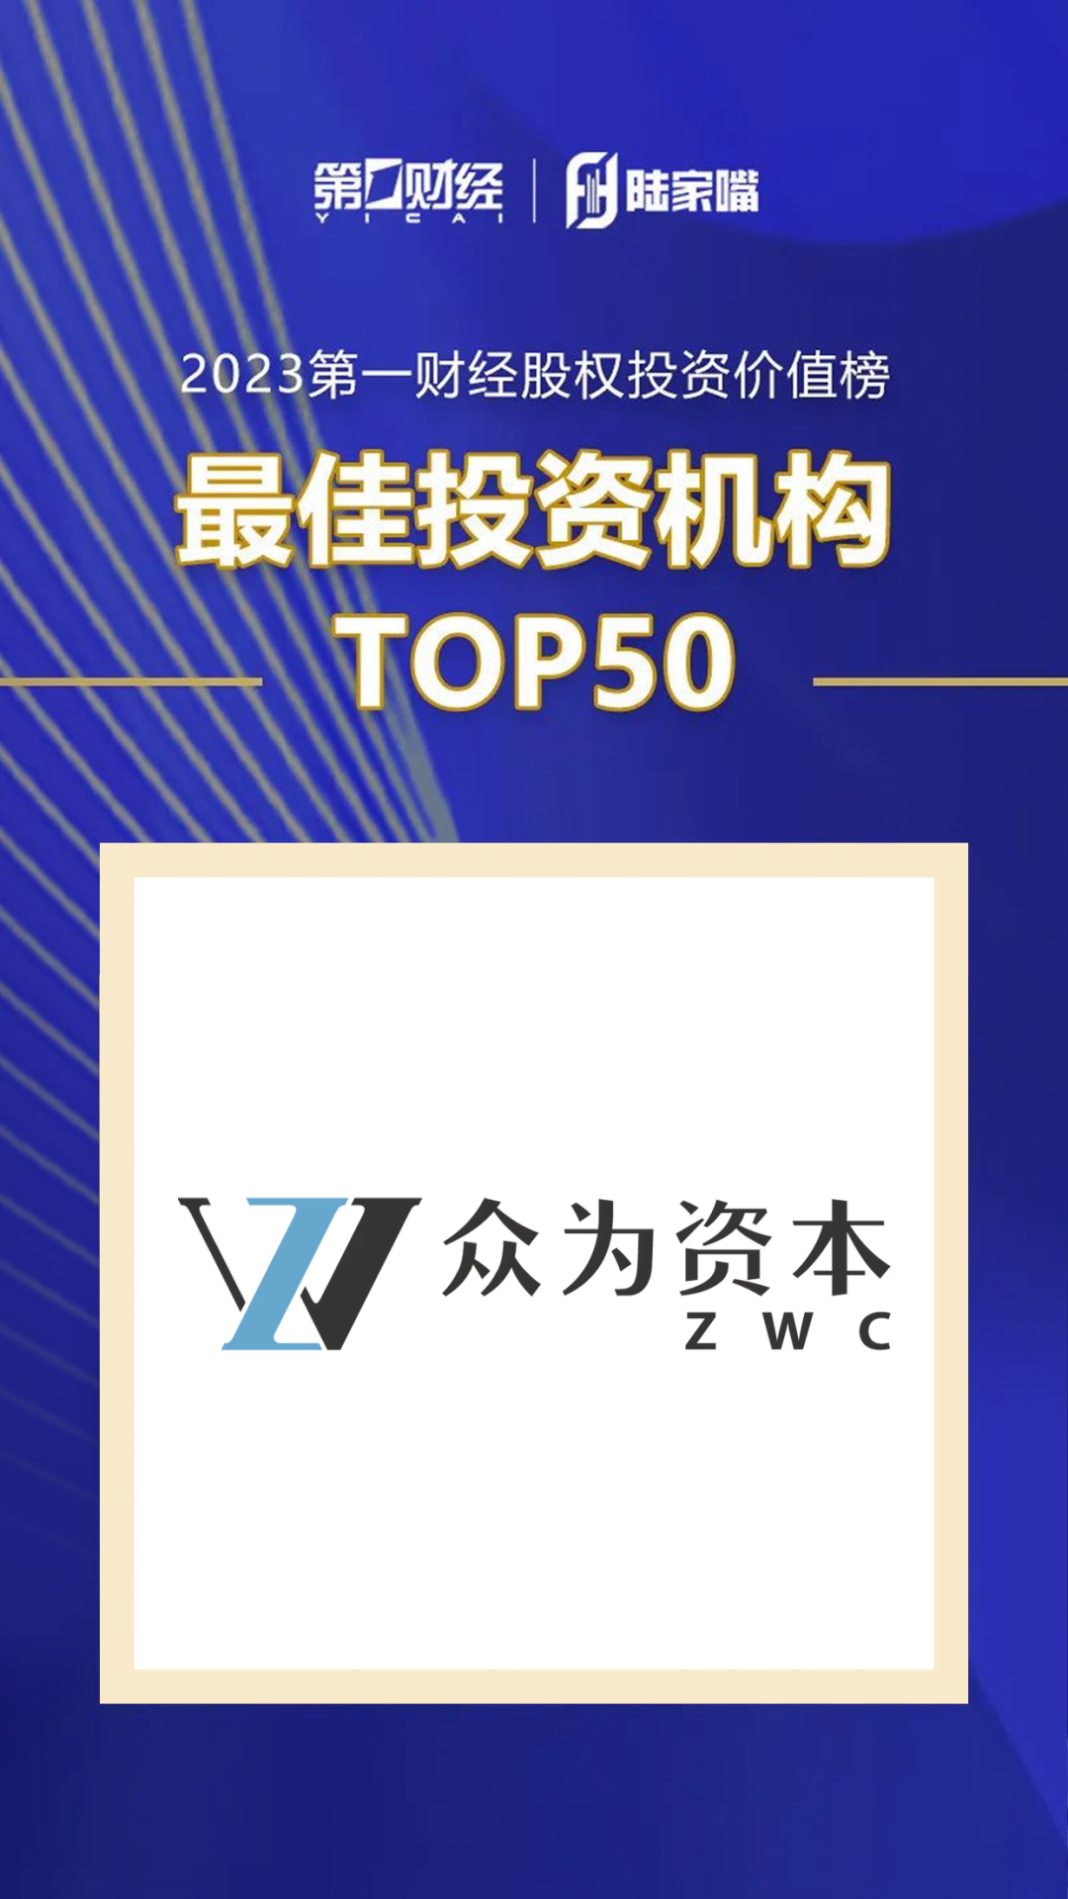 張永漢創辦的眾為資本，獲評為「最佳投資機構TOP50」